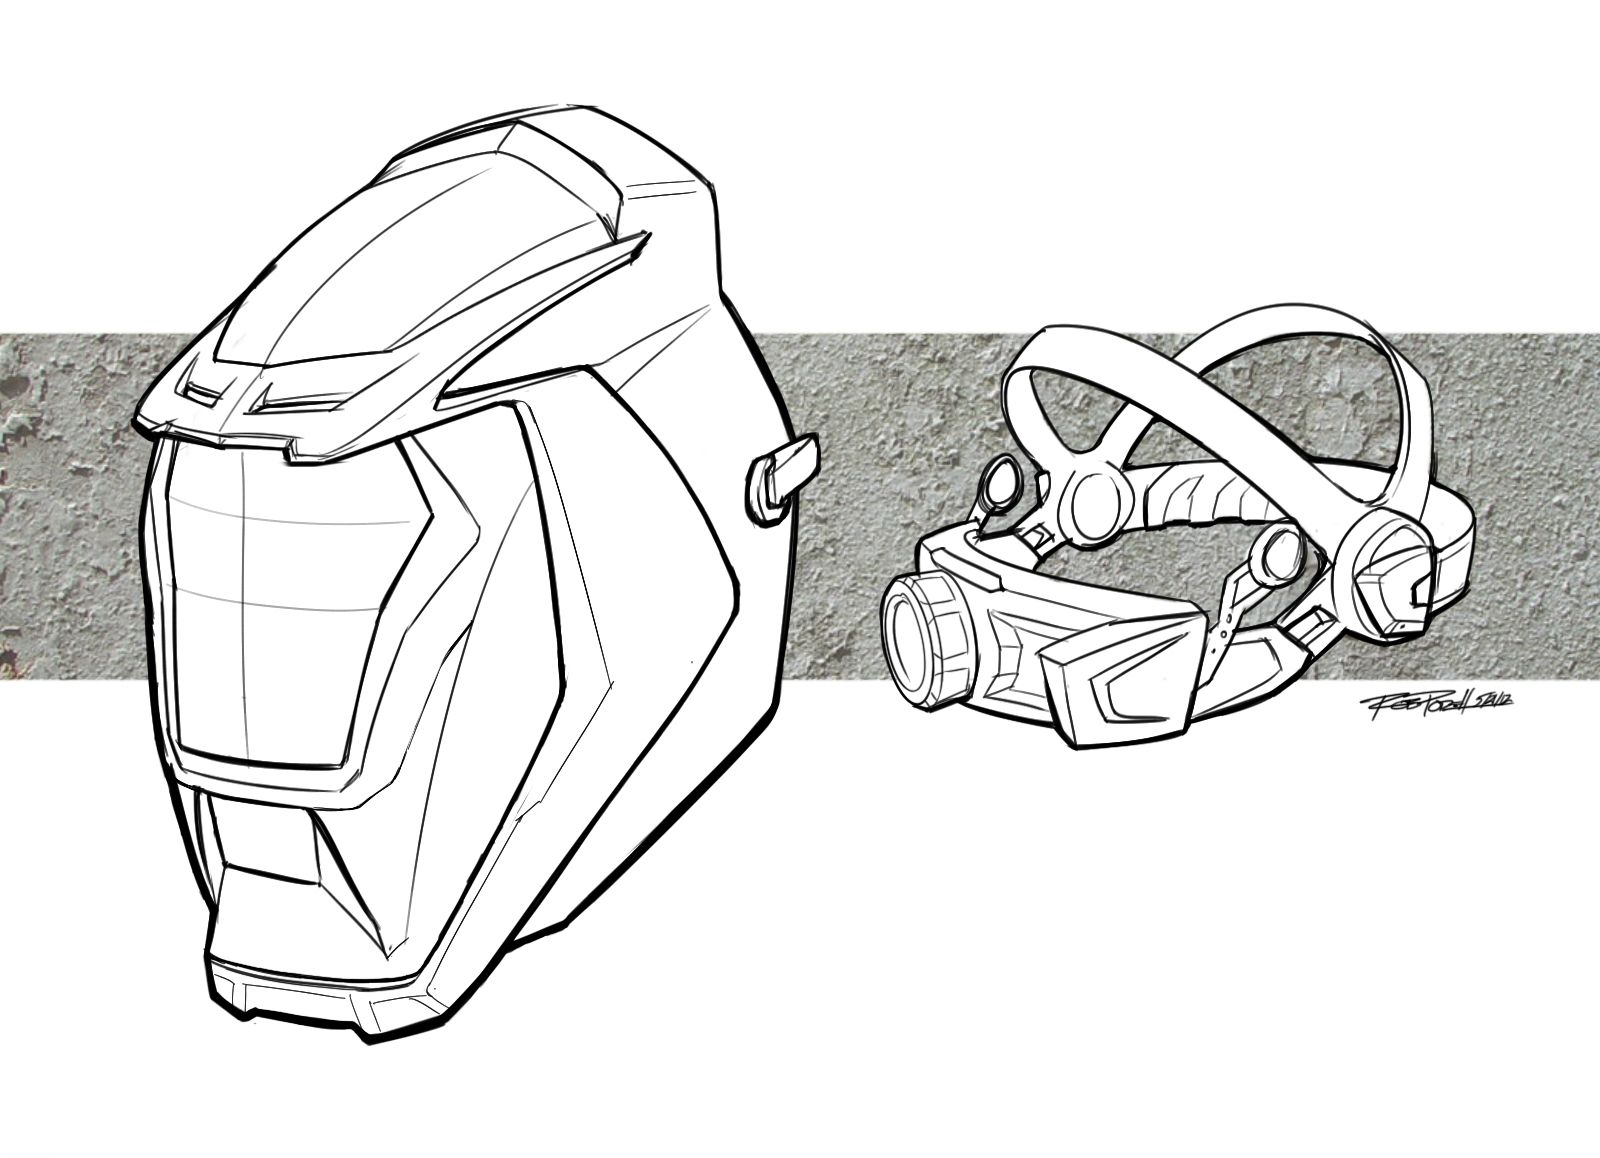 Welding Helmet Drawing - Welding Helmet Drawing. 